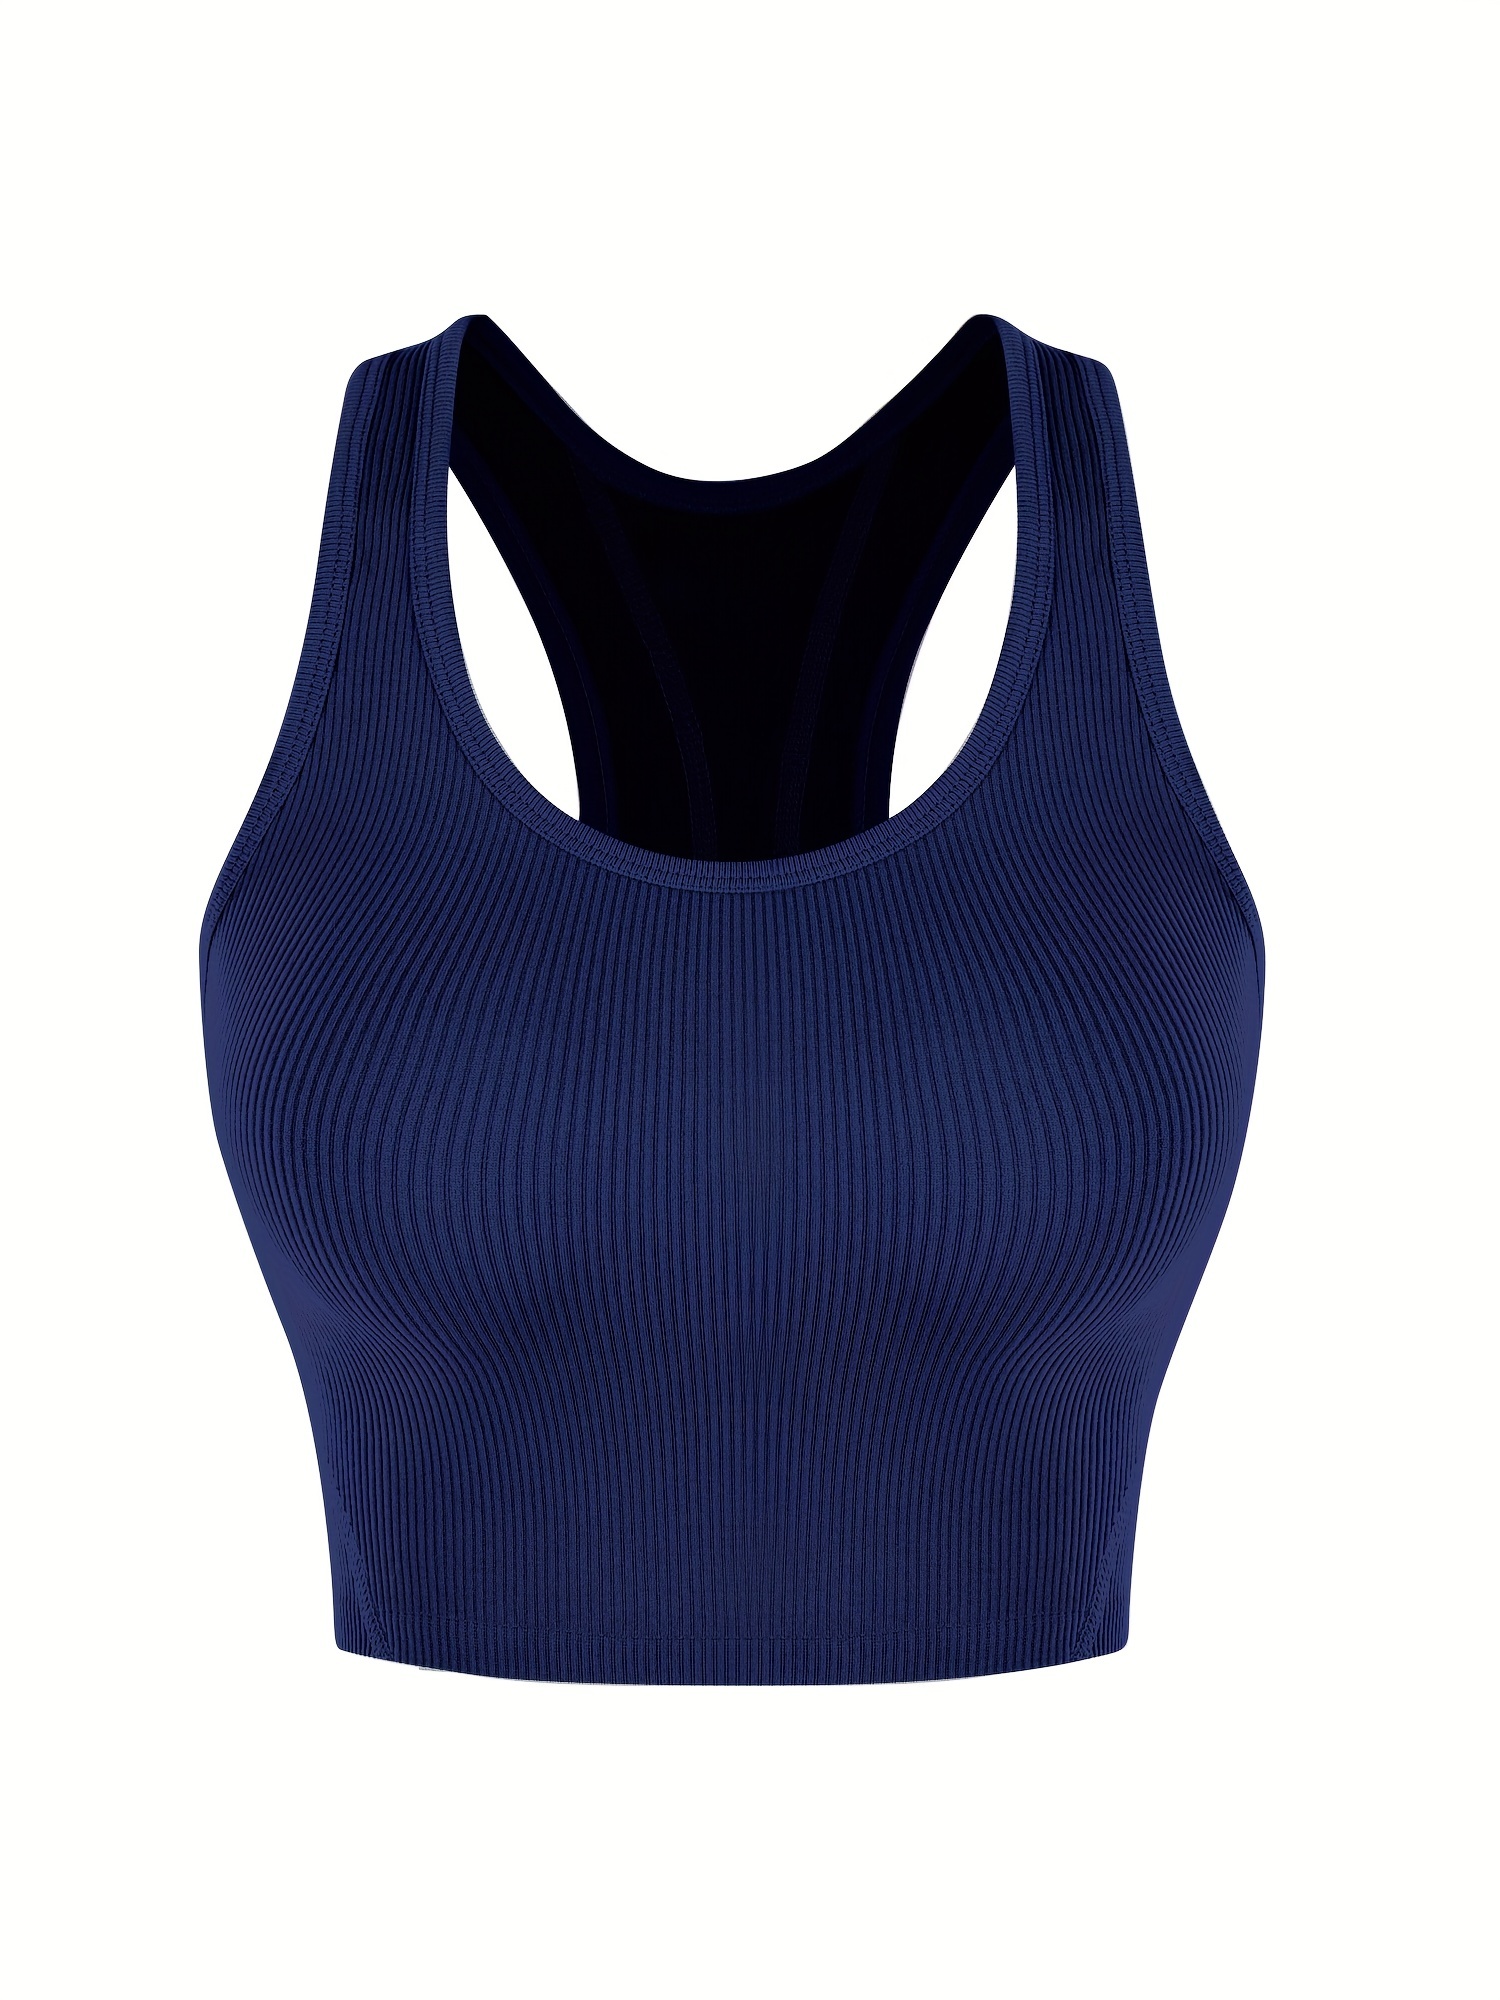 CHKOKKO Women Gym Tank Tops Sleeveless Sports Vest Indigo Navy XS :  : Fashion